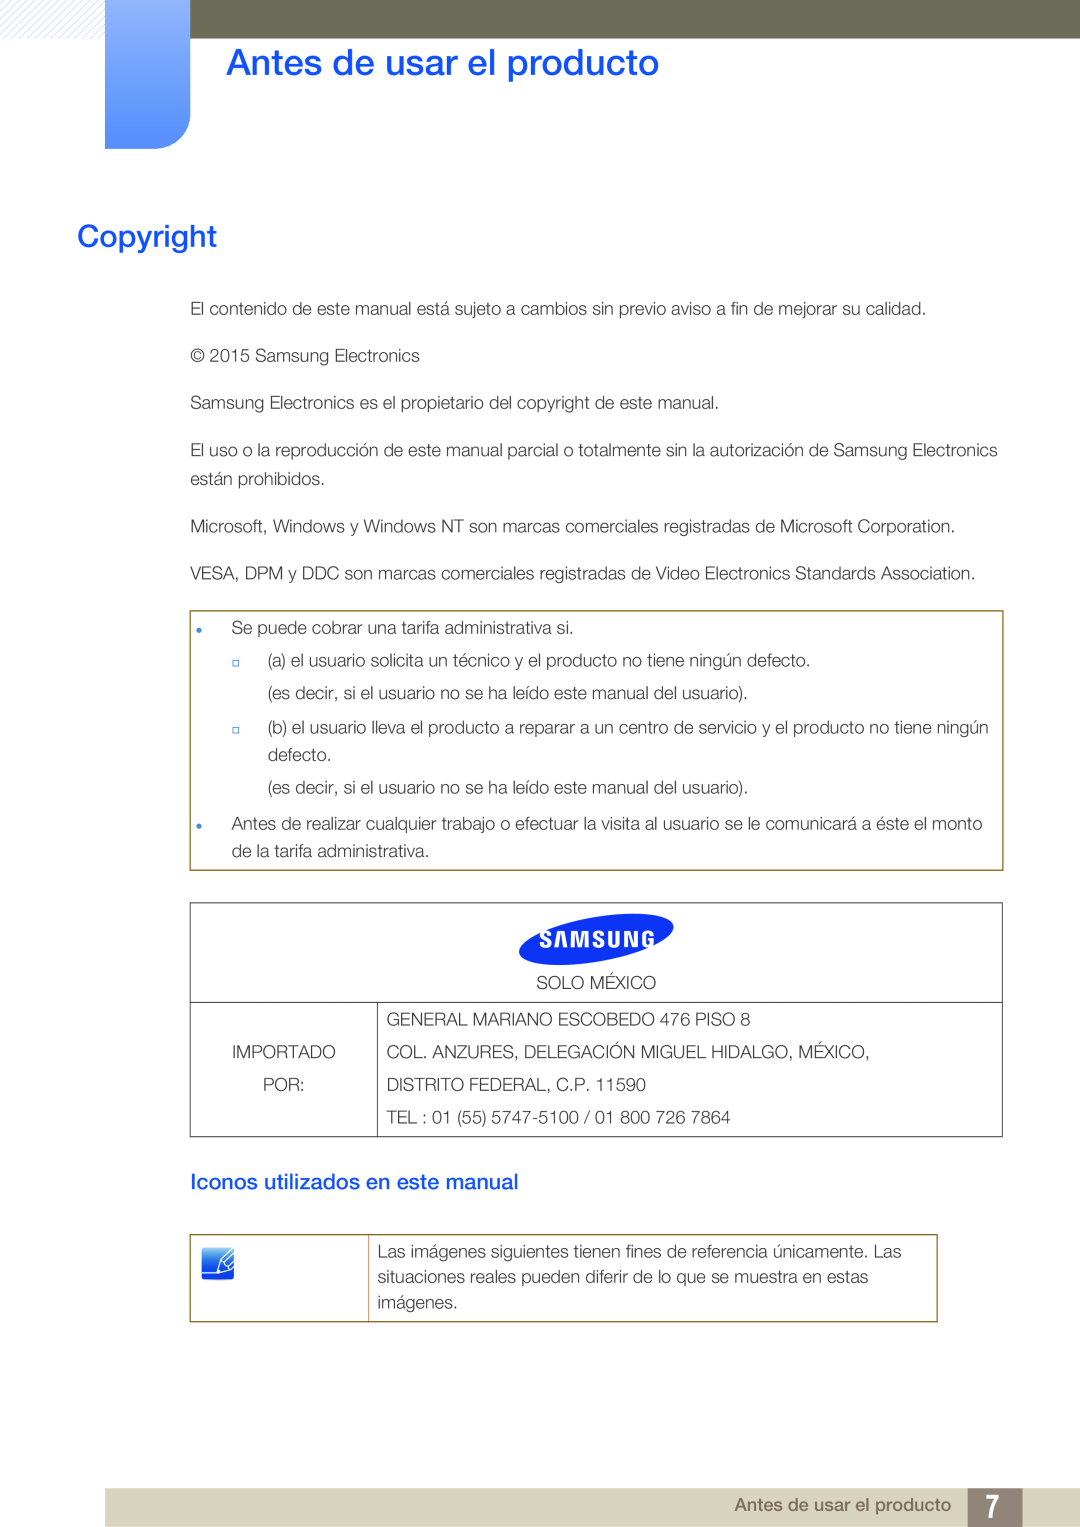 Samsung LS24E65UPLC/EN, LS24E65UPL/EN, LS27E45KBS/EN Antes de usar el producto, Copyright, Iconos utilizados en este manual 